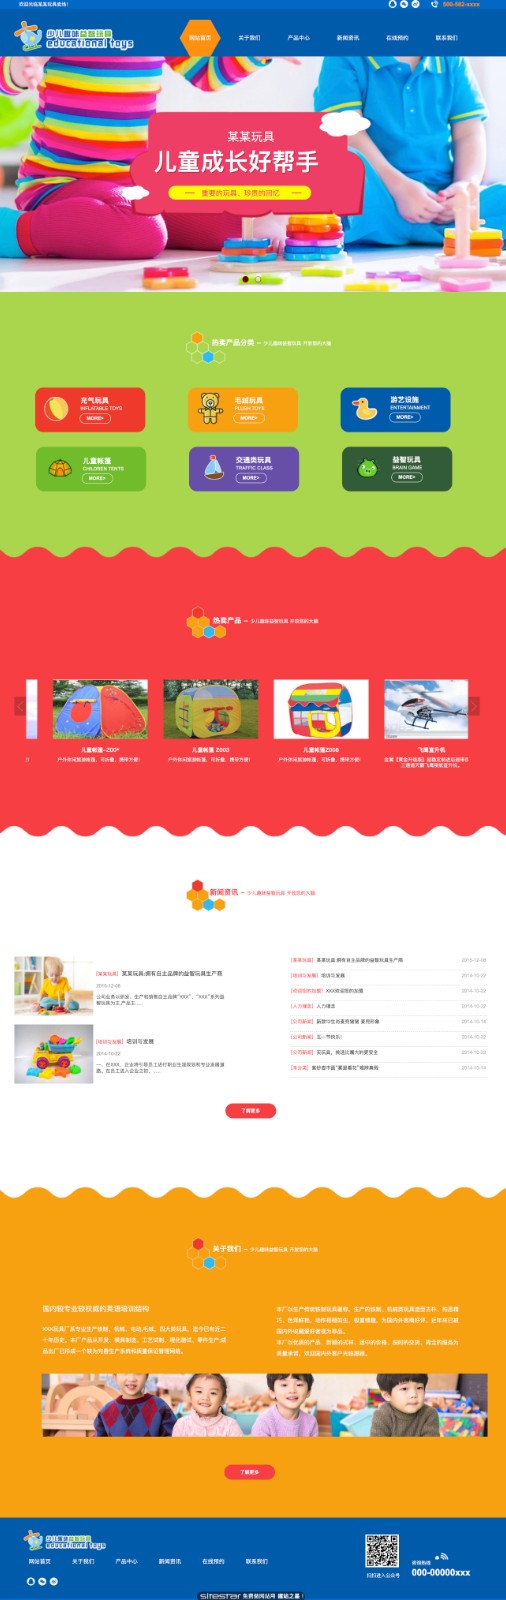 企业网站精美模板-toys-1051194